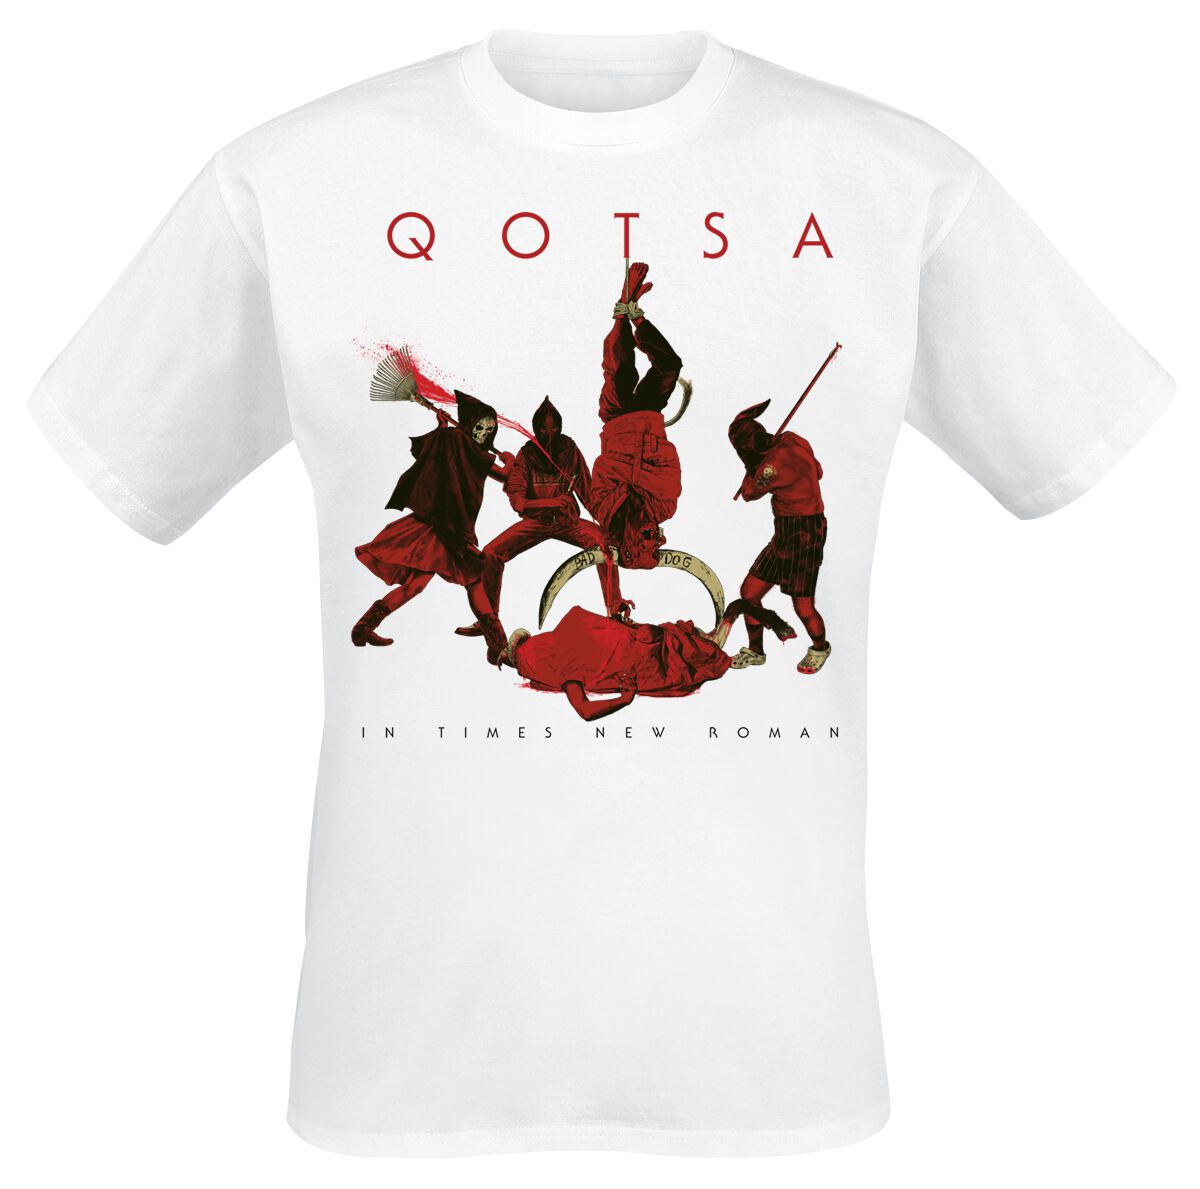 Queens Of The Stone Age T-Shirt - In Times New Roman - Emotion Sickness - S bis 3XL - für Männer - Größe XXL - weiß  - Lizenziertes Merchandise!